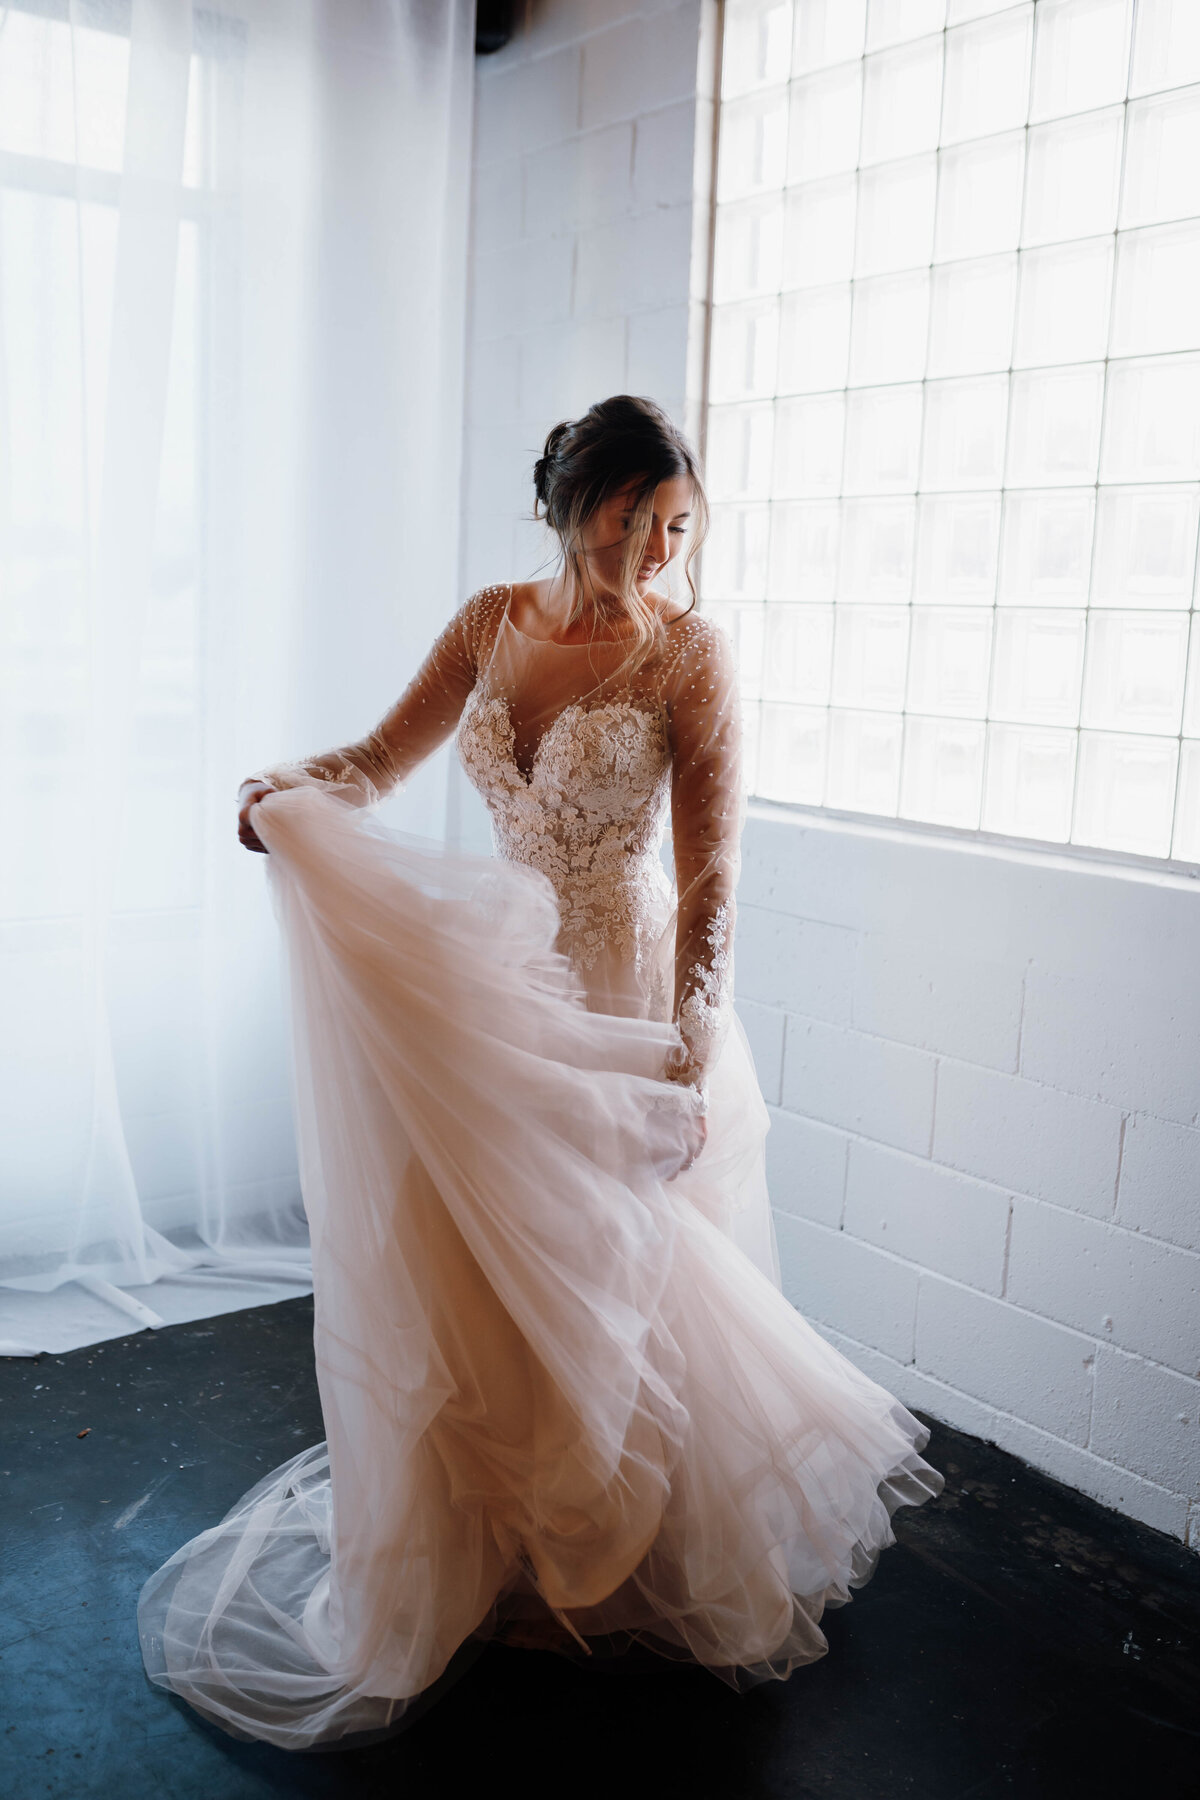 bride in wedding dress twirling